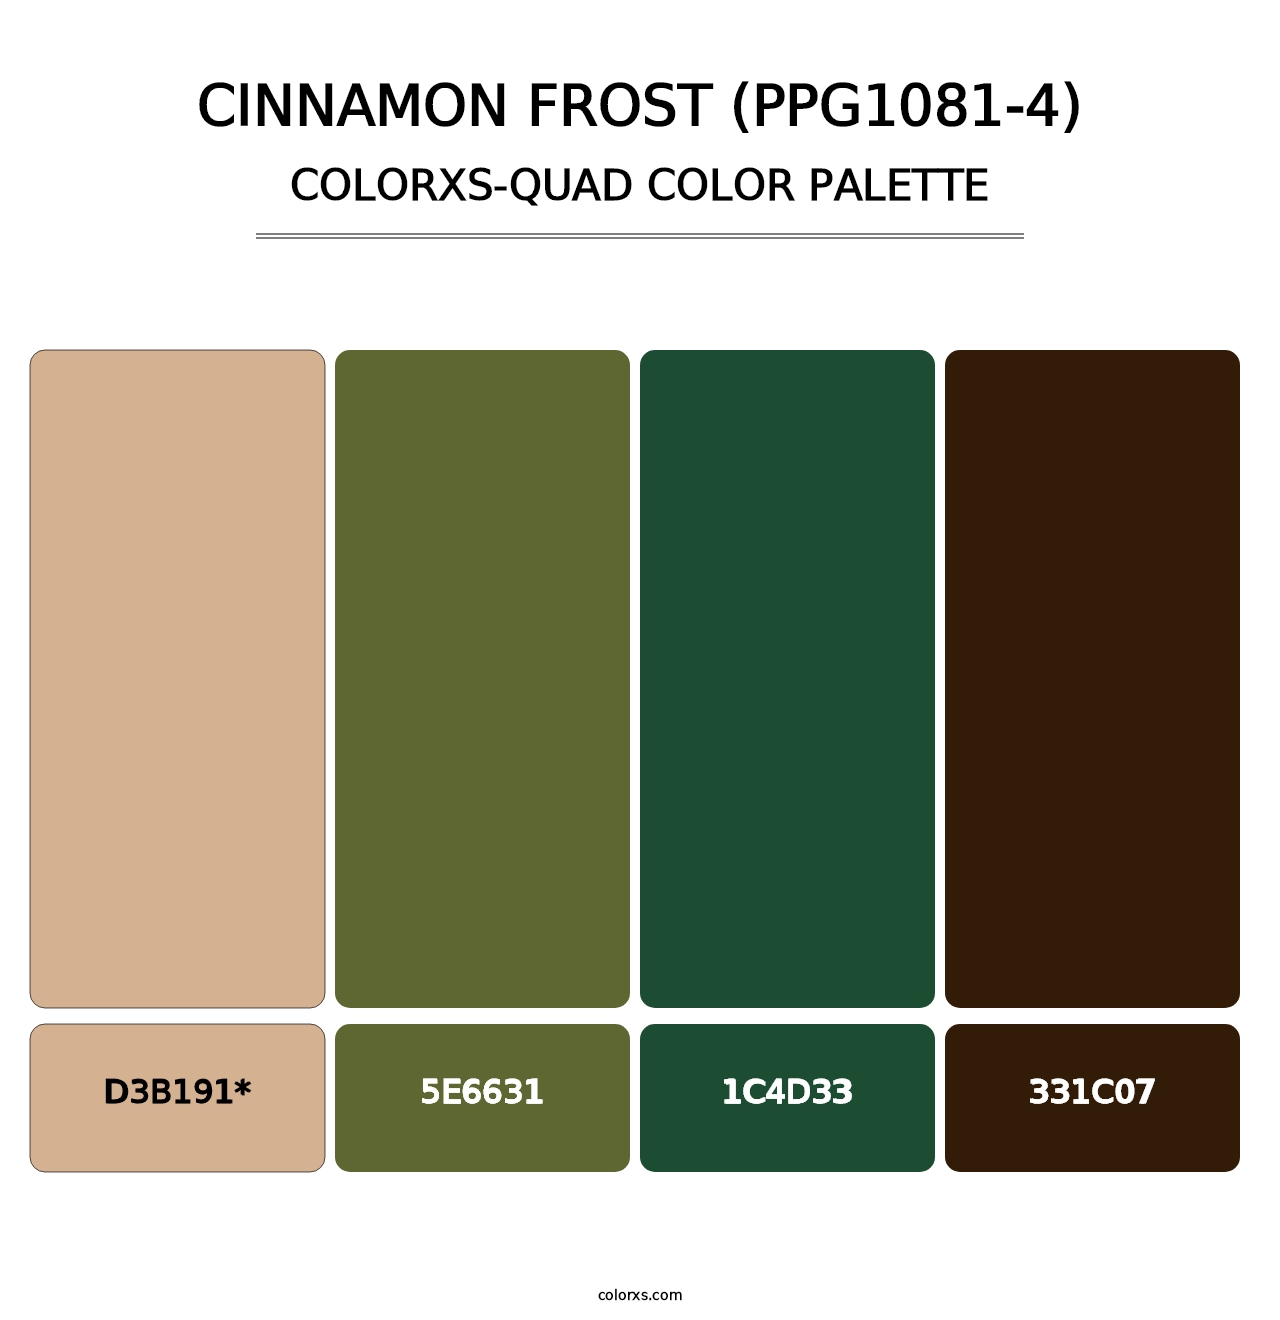 Cinnamon Frost (PPG1081-4) - Colorxs Quad Palette